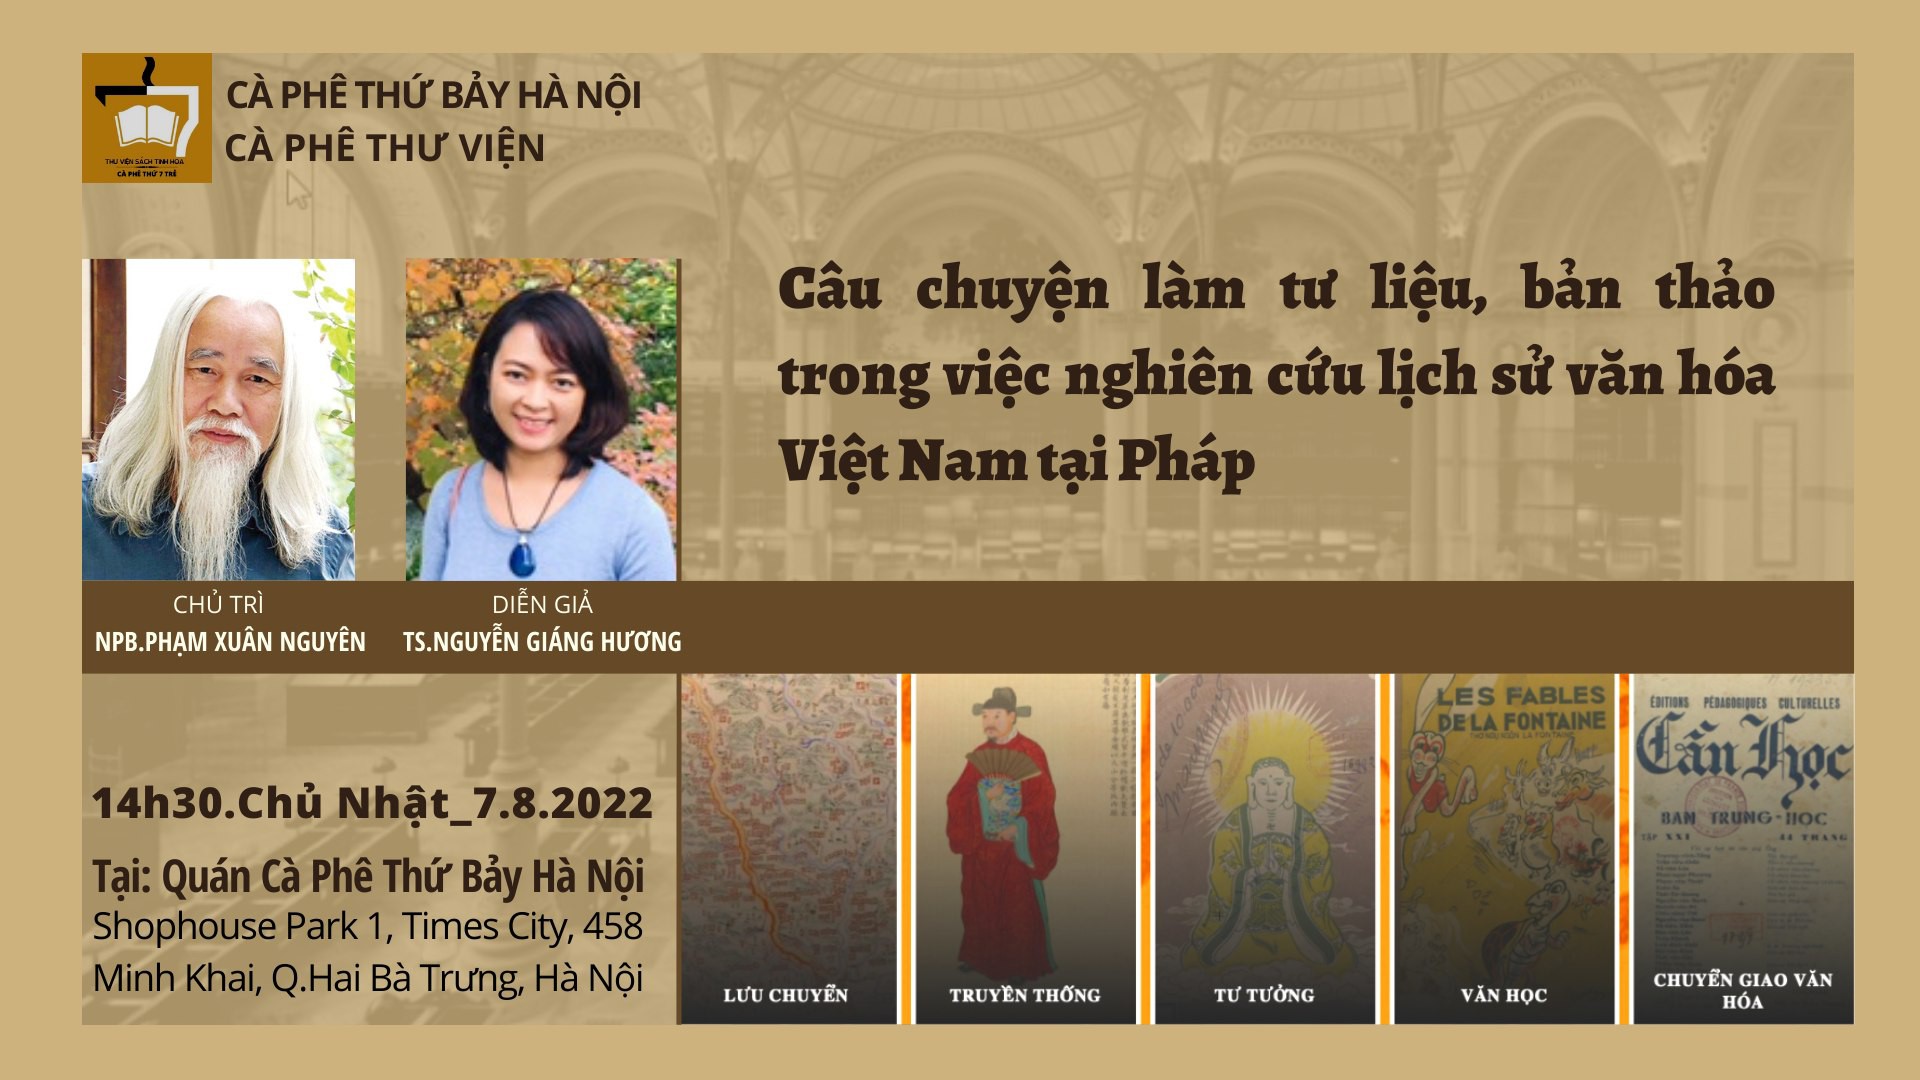 Câu chuyện làm tư liệu, bản thảo trong việc nghiên cứu lịch sử văn hóa Việt Nam tại Pháp